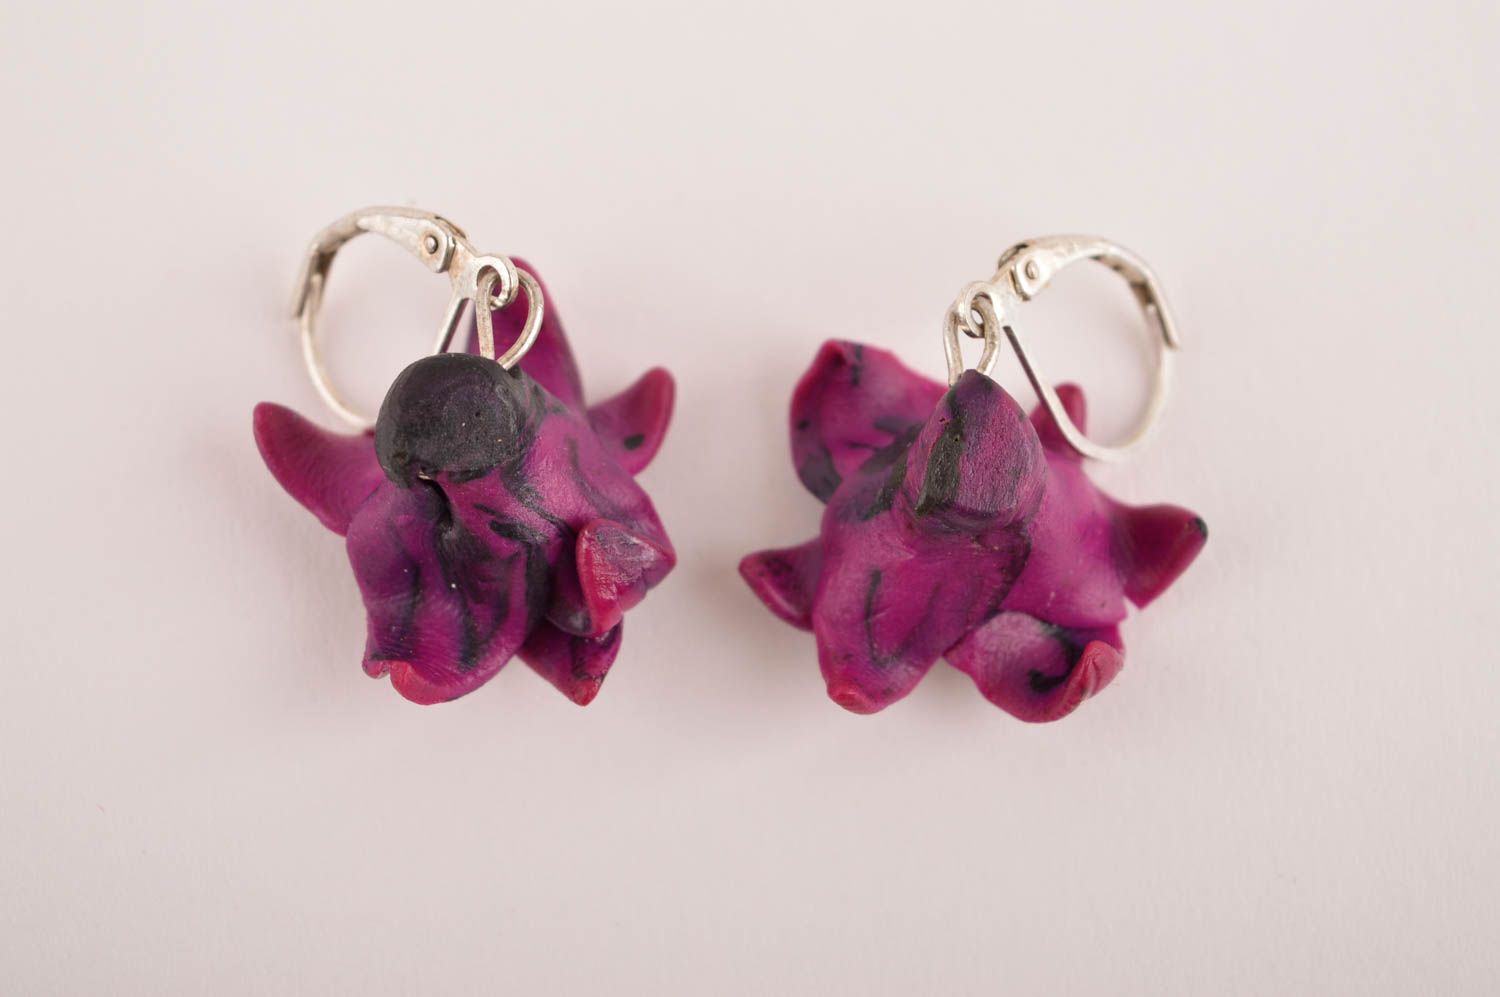 Handmade earrings designer accessory gift ideas women earrings clay jewelry photo 3